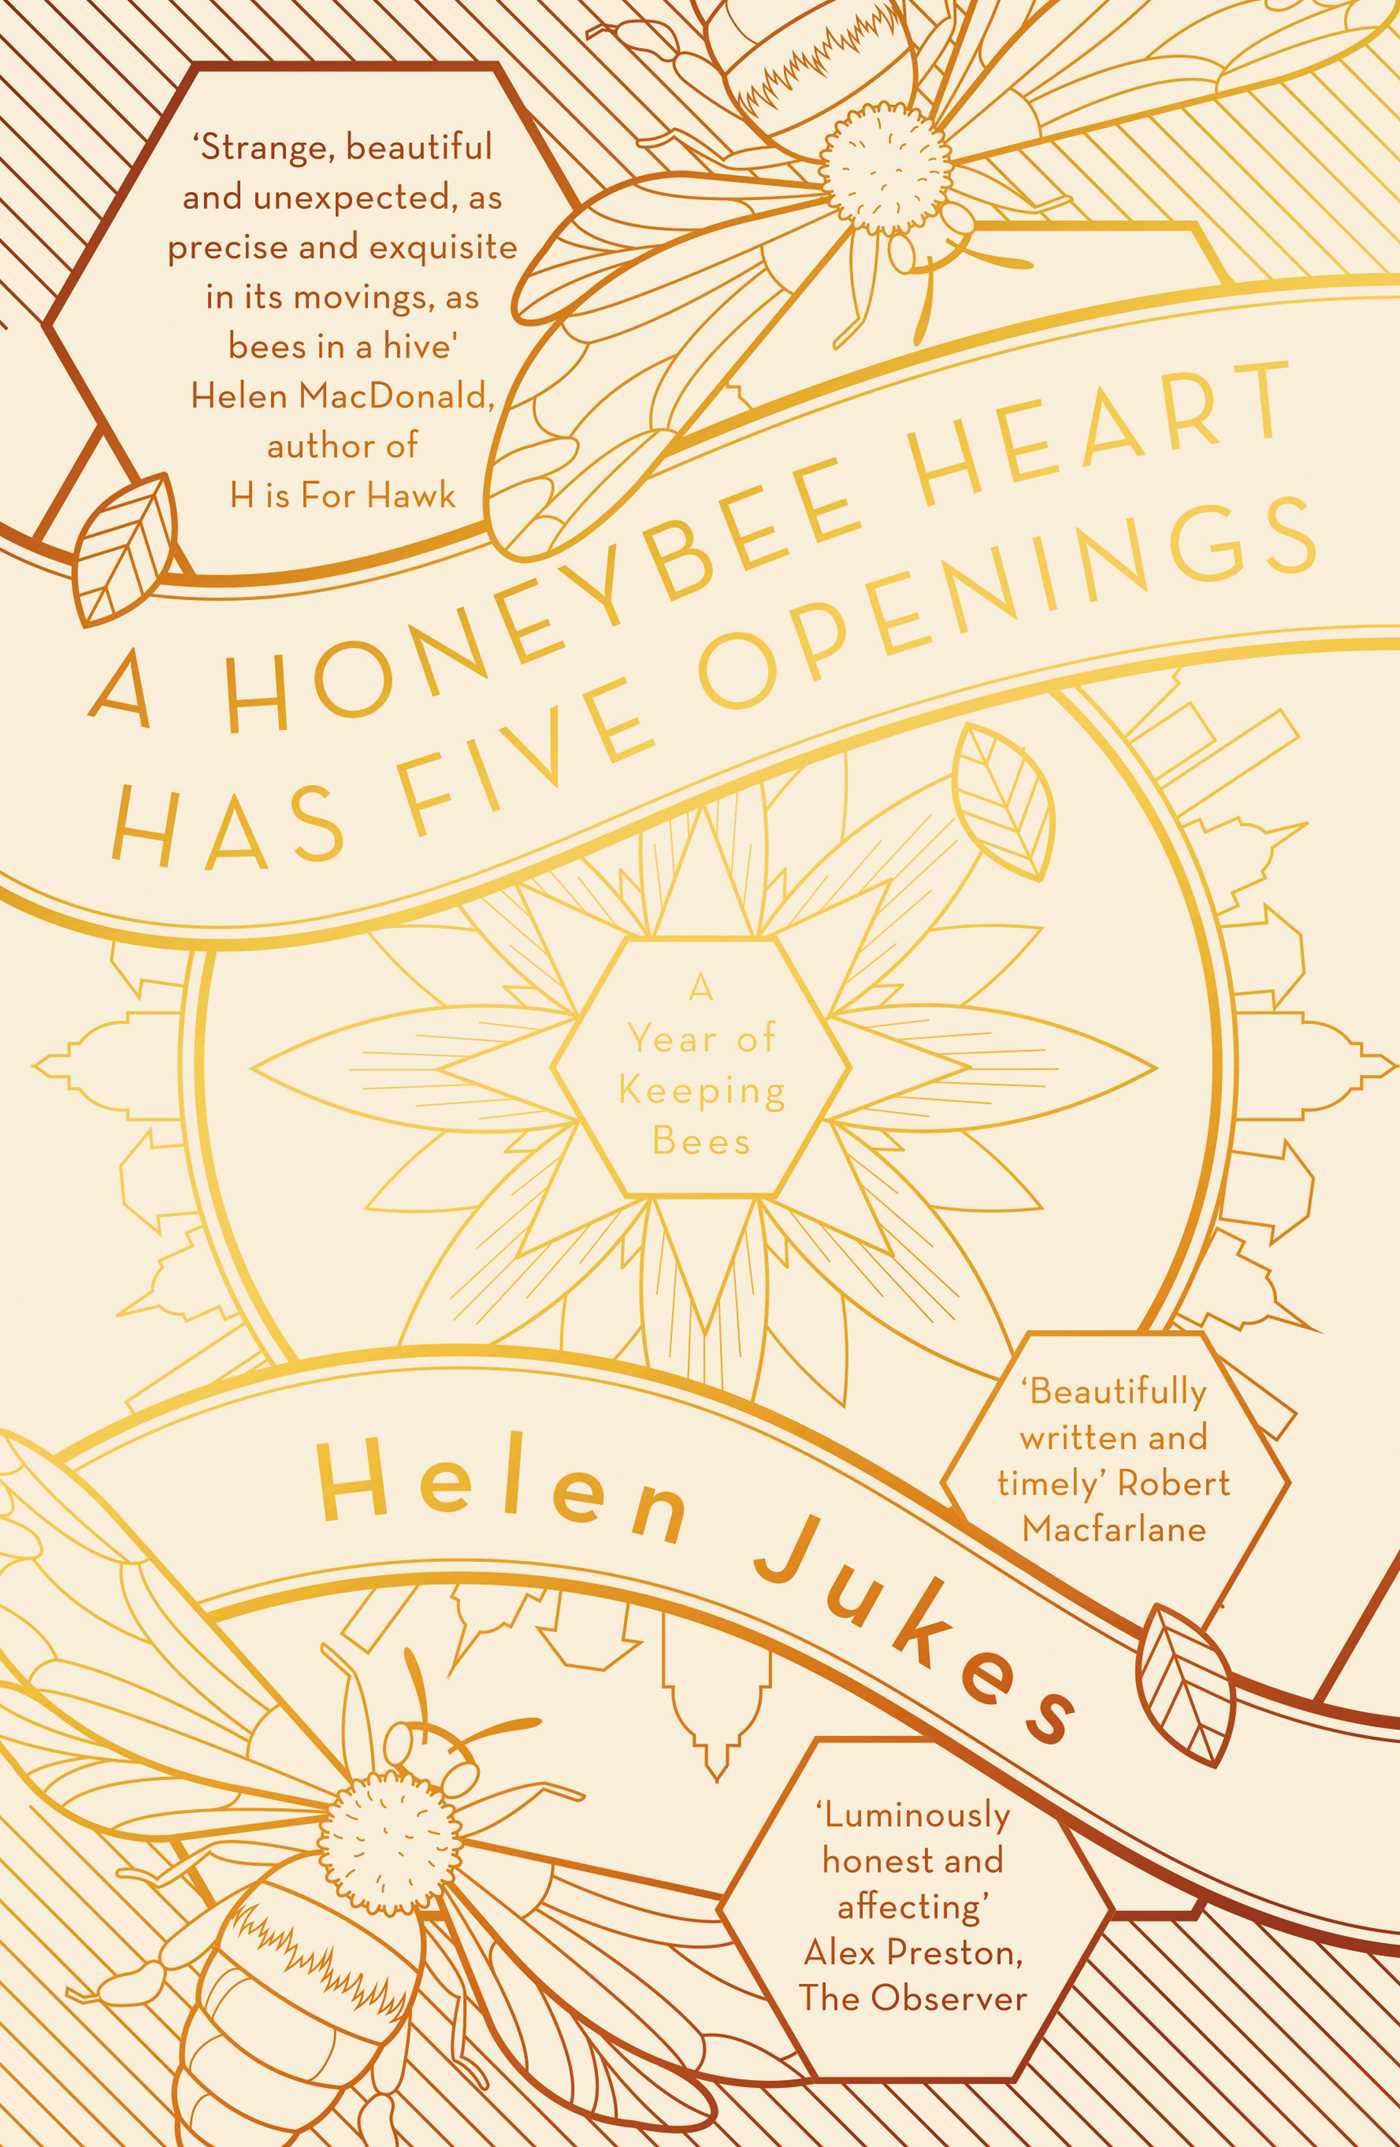 A Honeybee Heart Has Five Openings - <5